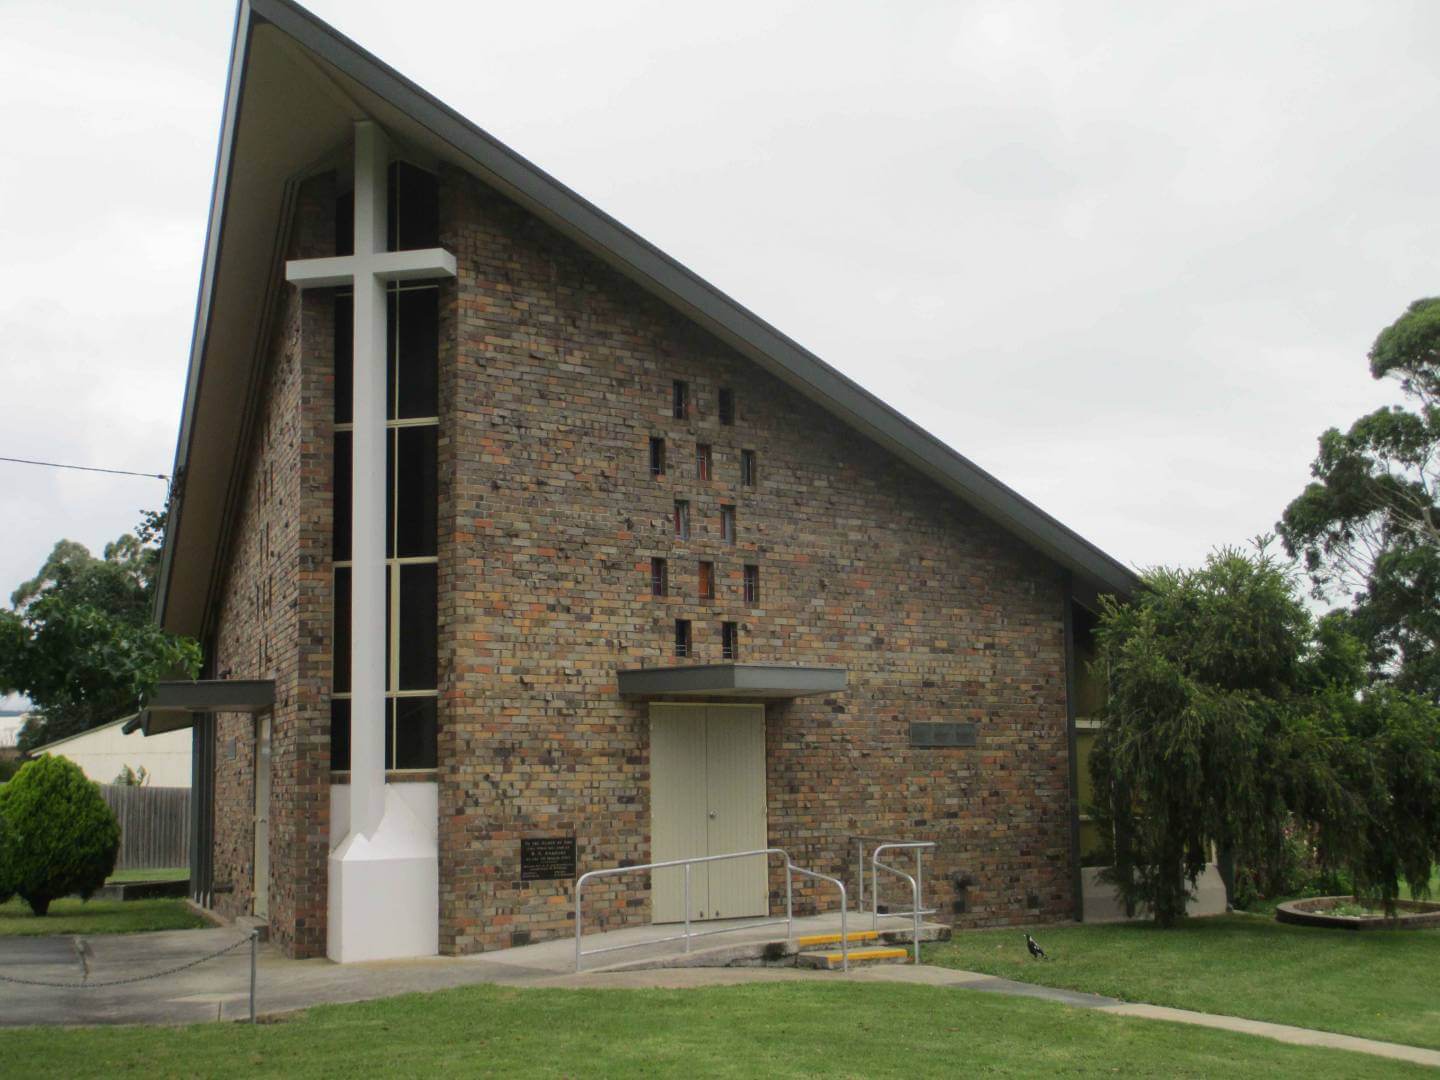 Moe Presbyterian Church Churches Australia